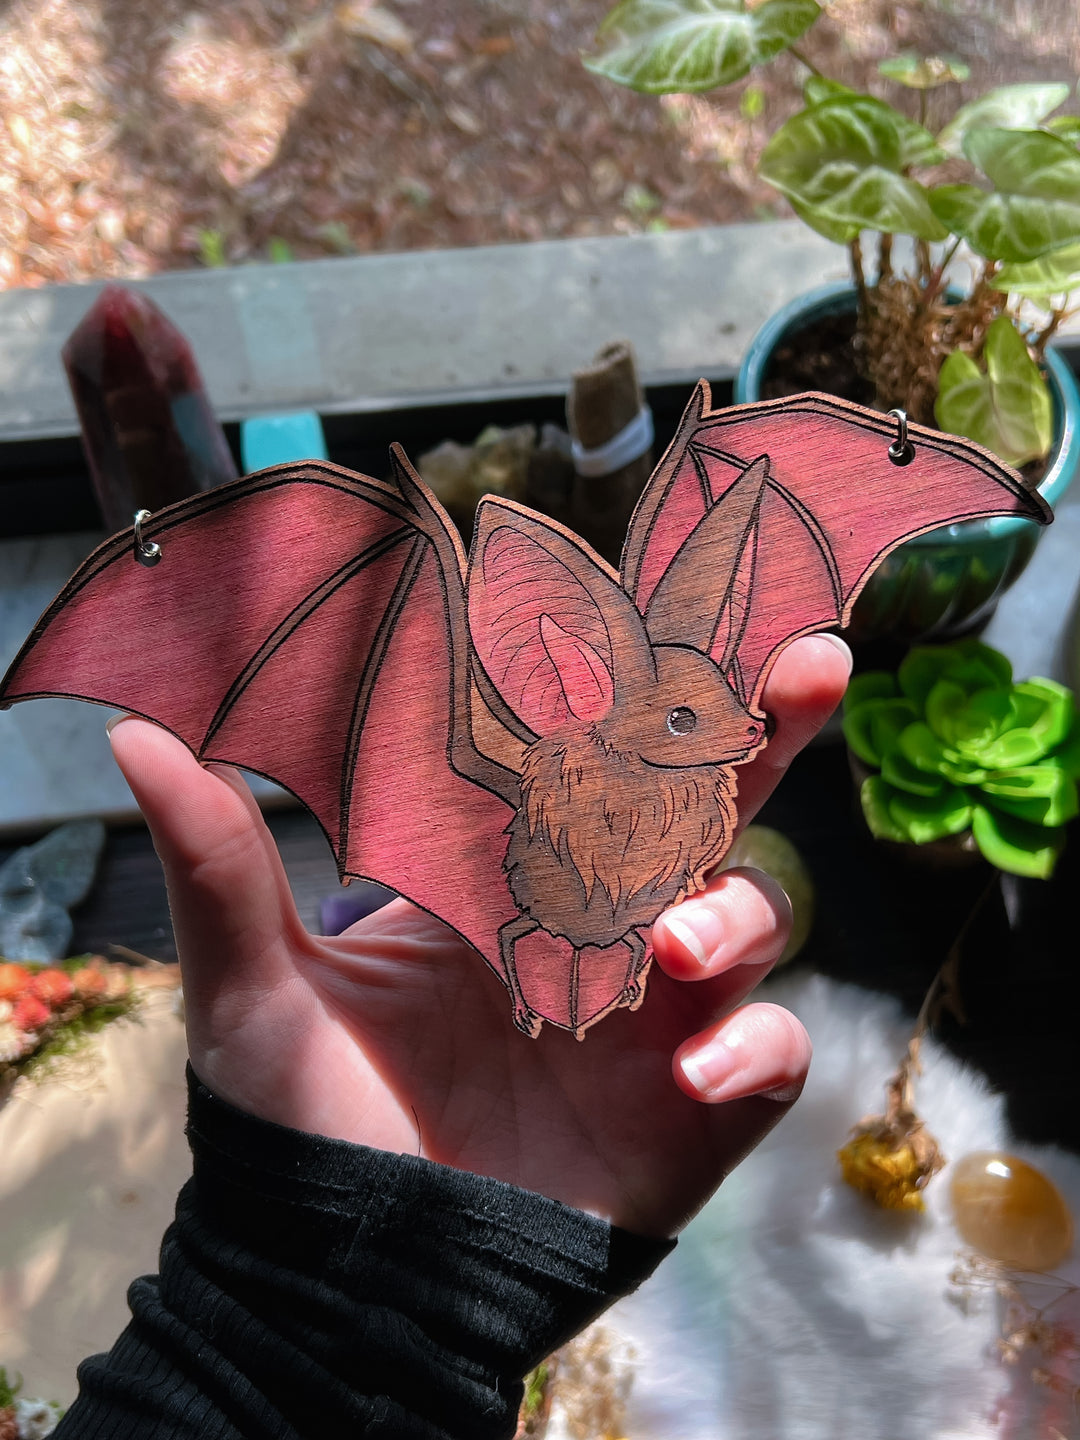 Wood Bat Hanging